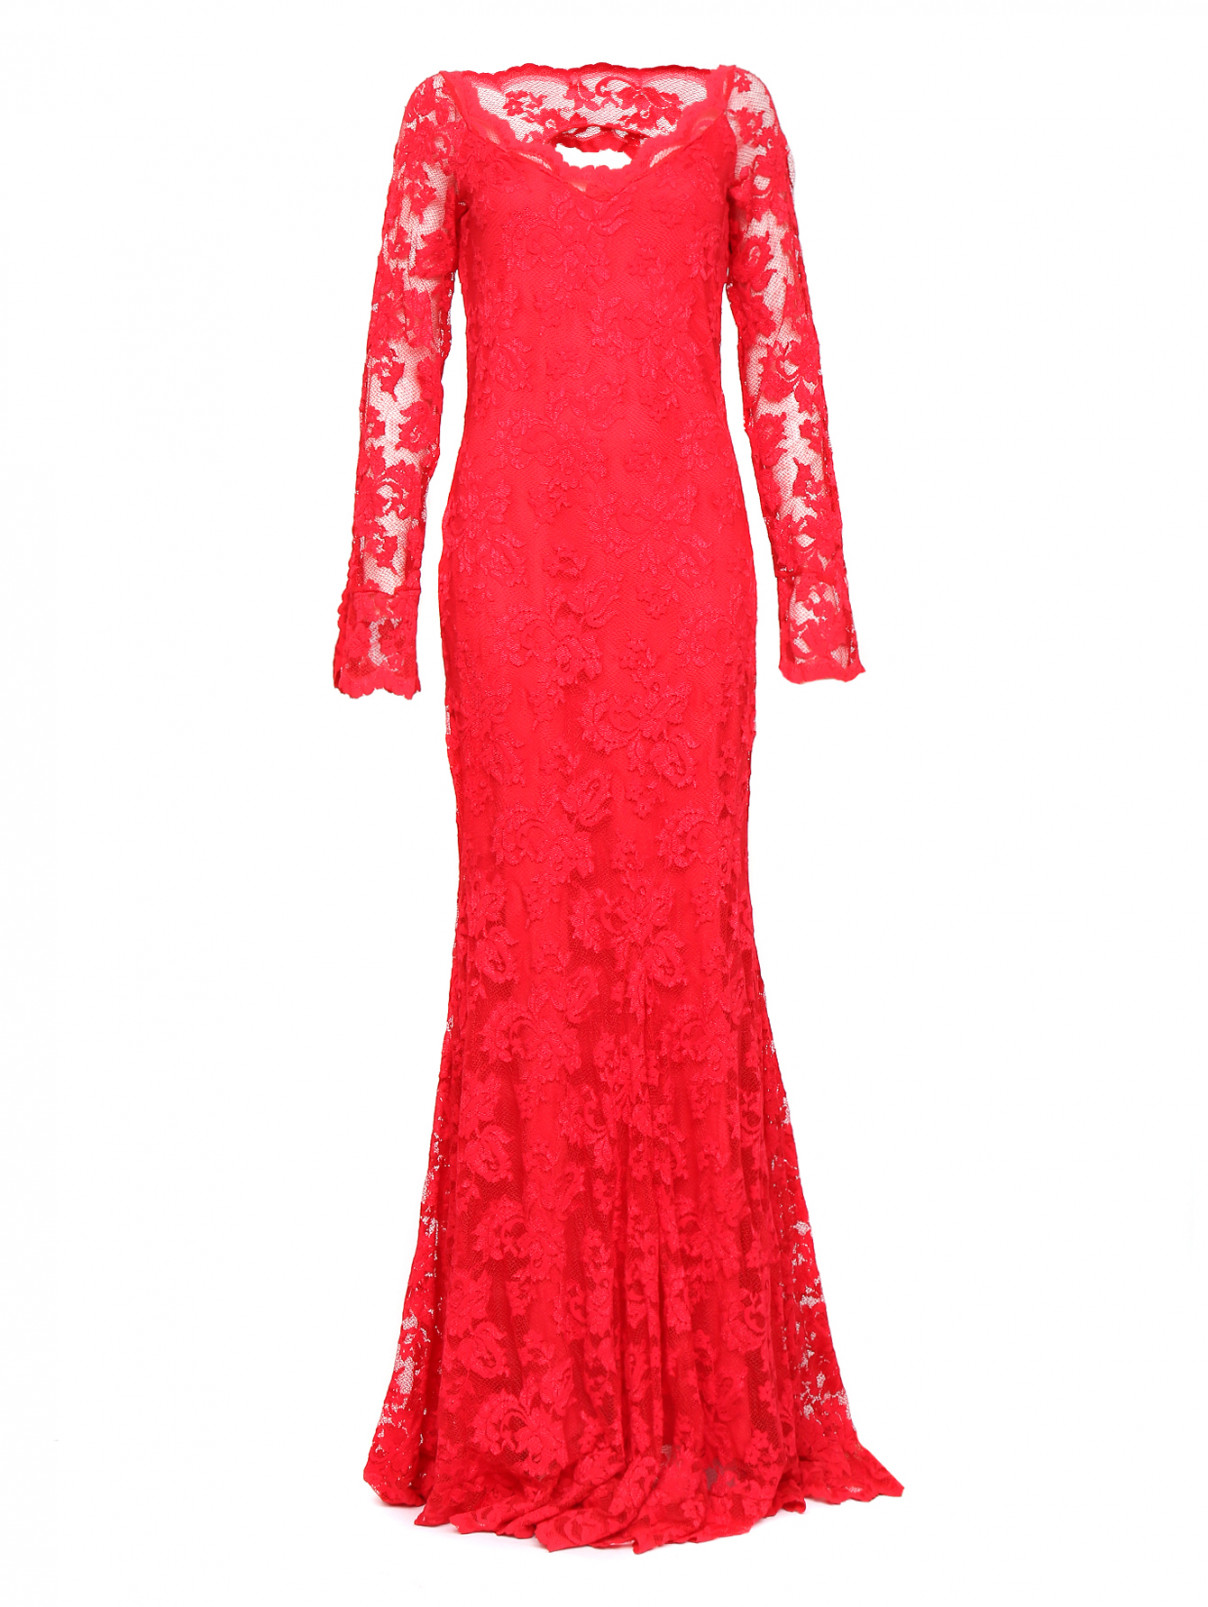 Платье-макси с вырезом на спине Olvi's  –  Общий вид  – Цвет:  Красный